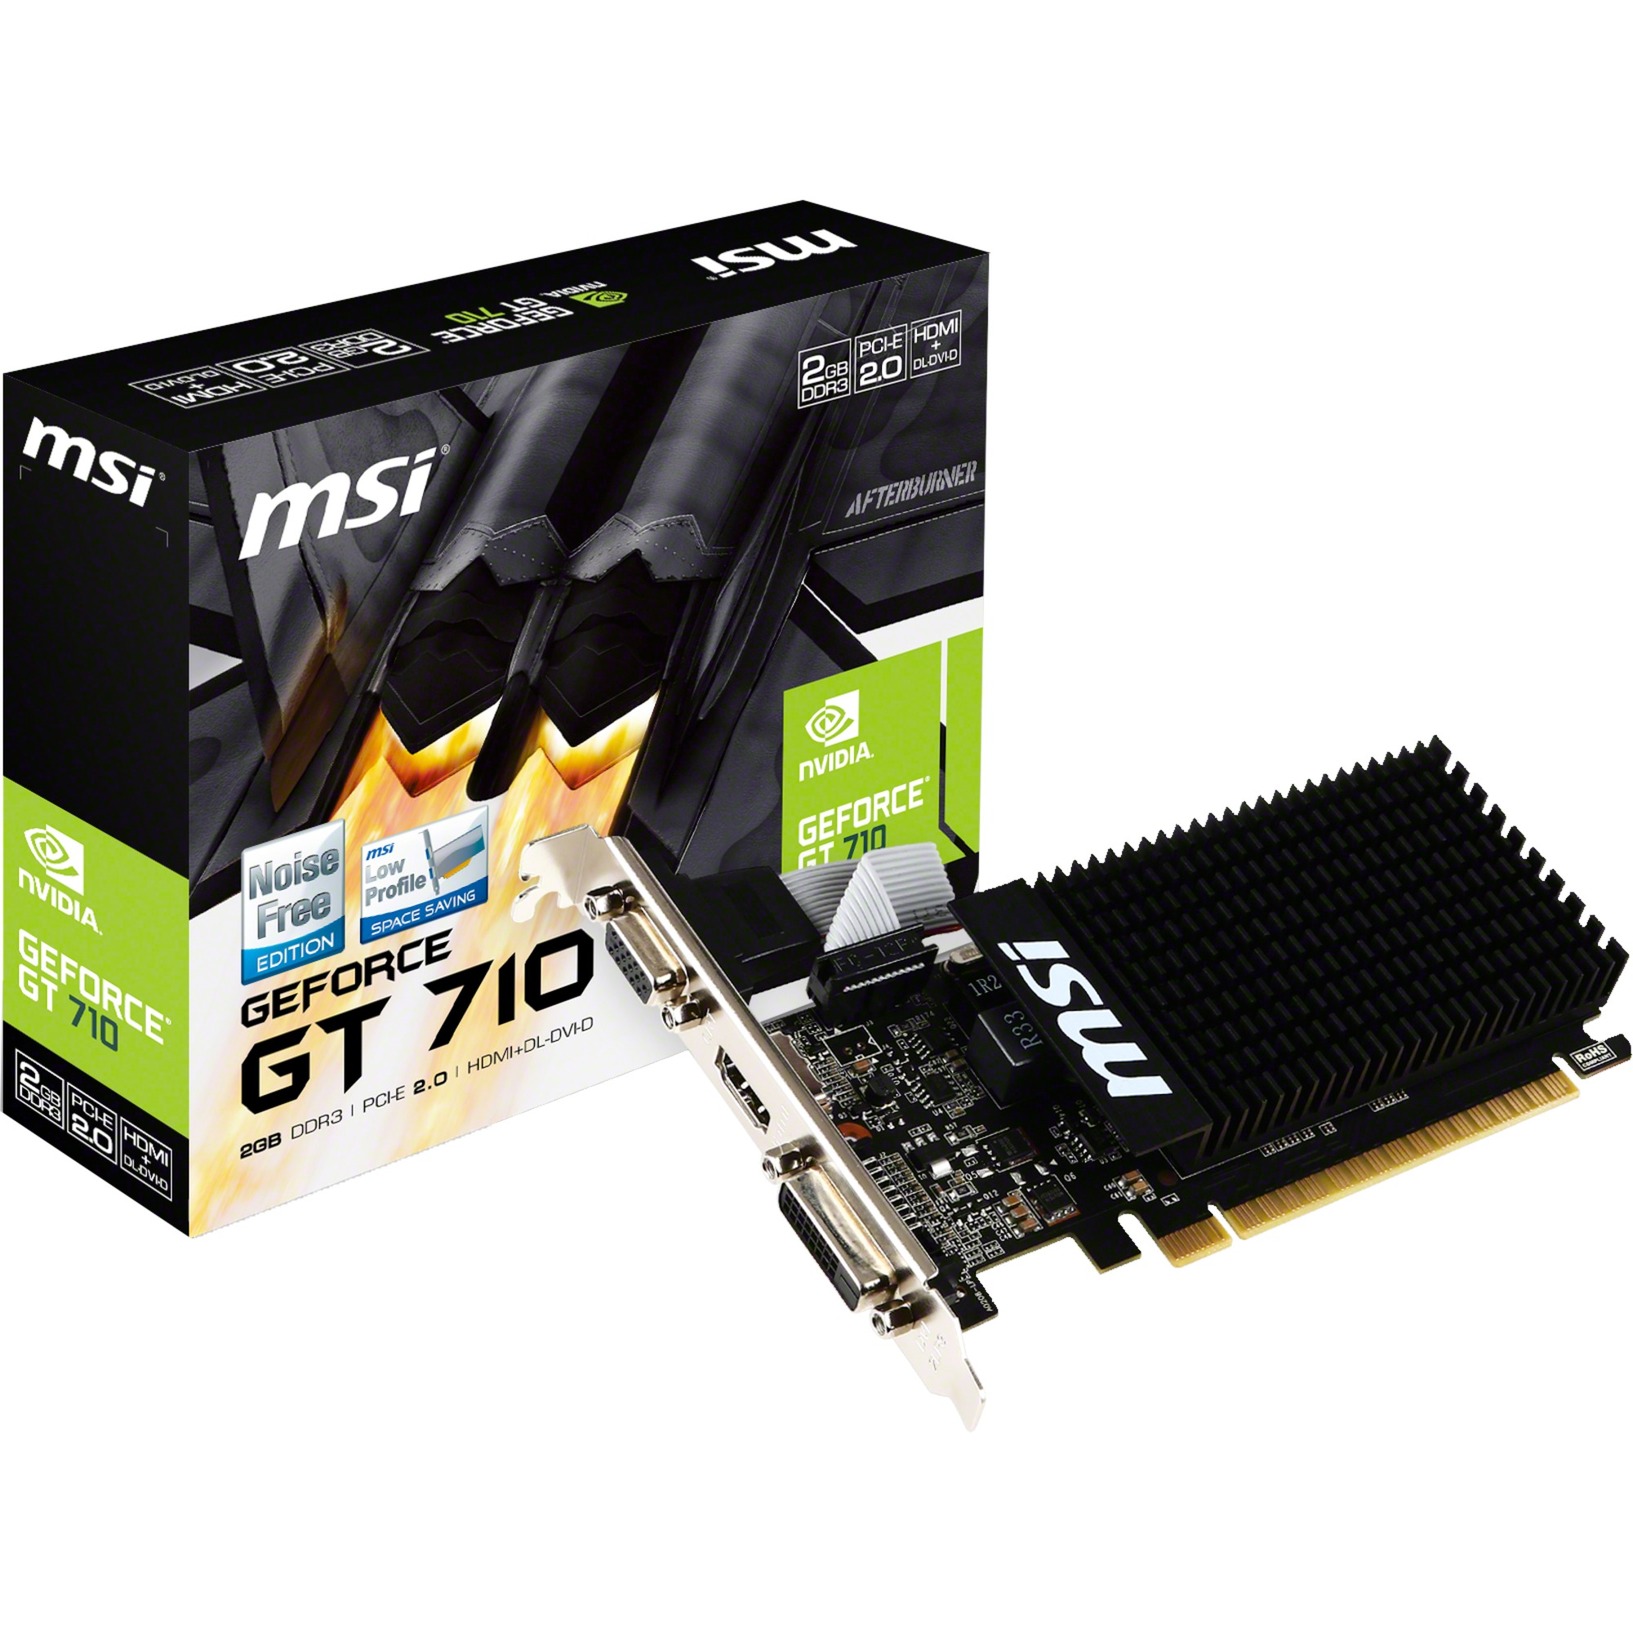 V809-2000R karta graficzna GeForce GT 710 2 GB GDDR3